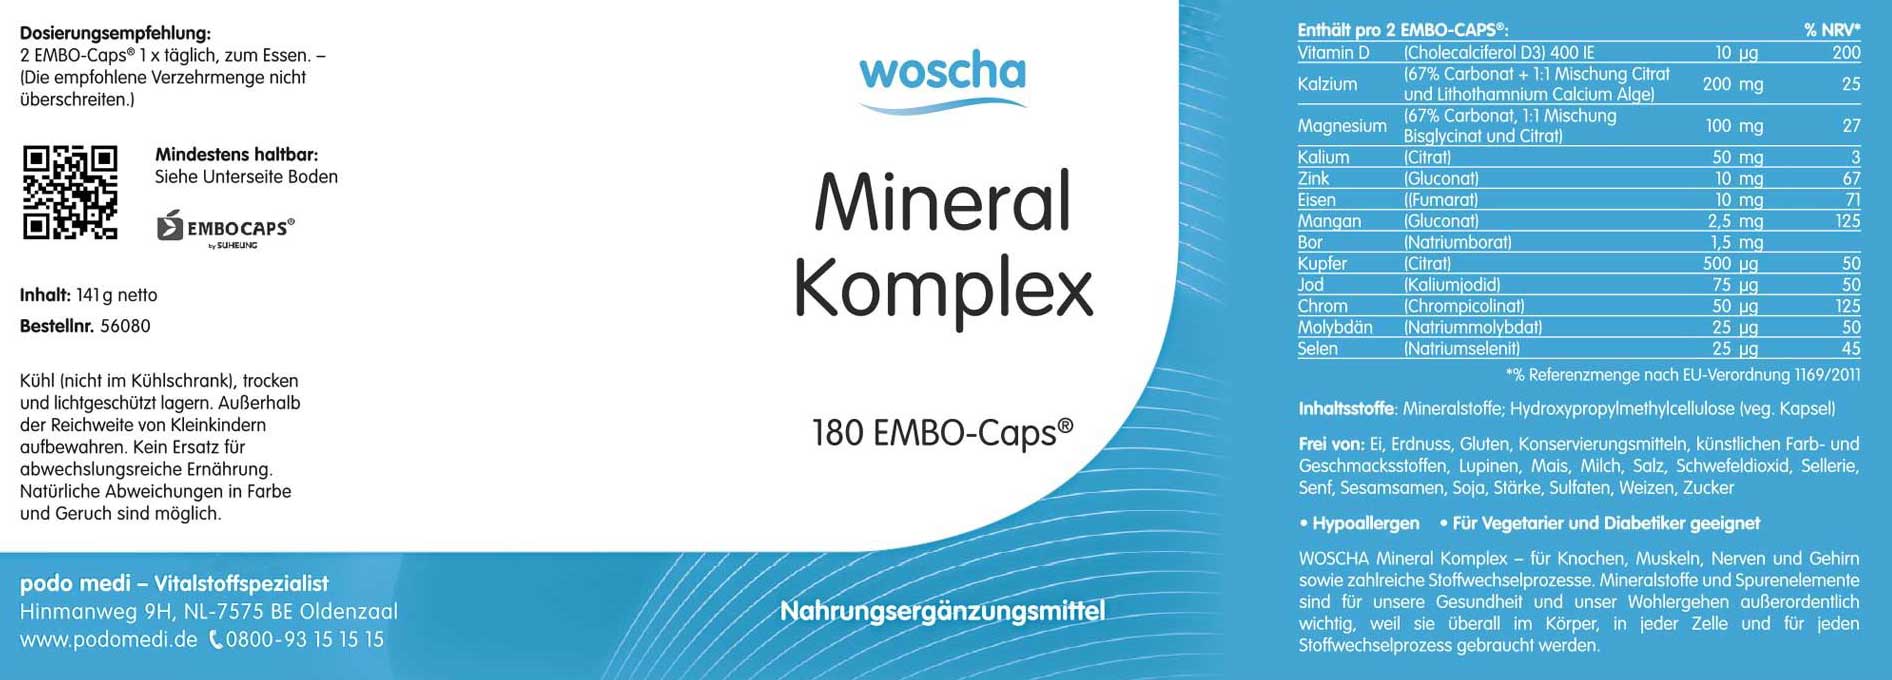 Woscha Mineral Komplex von podo medi beinhaltet 180 Kapseln Etikett